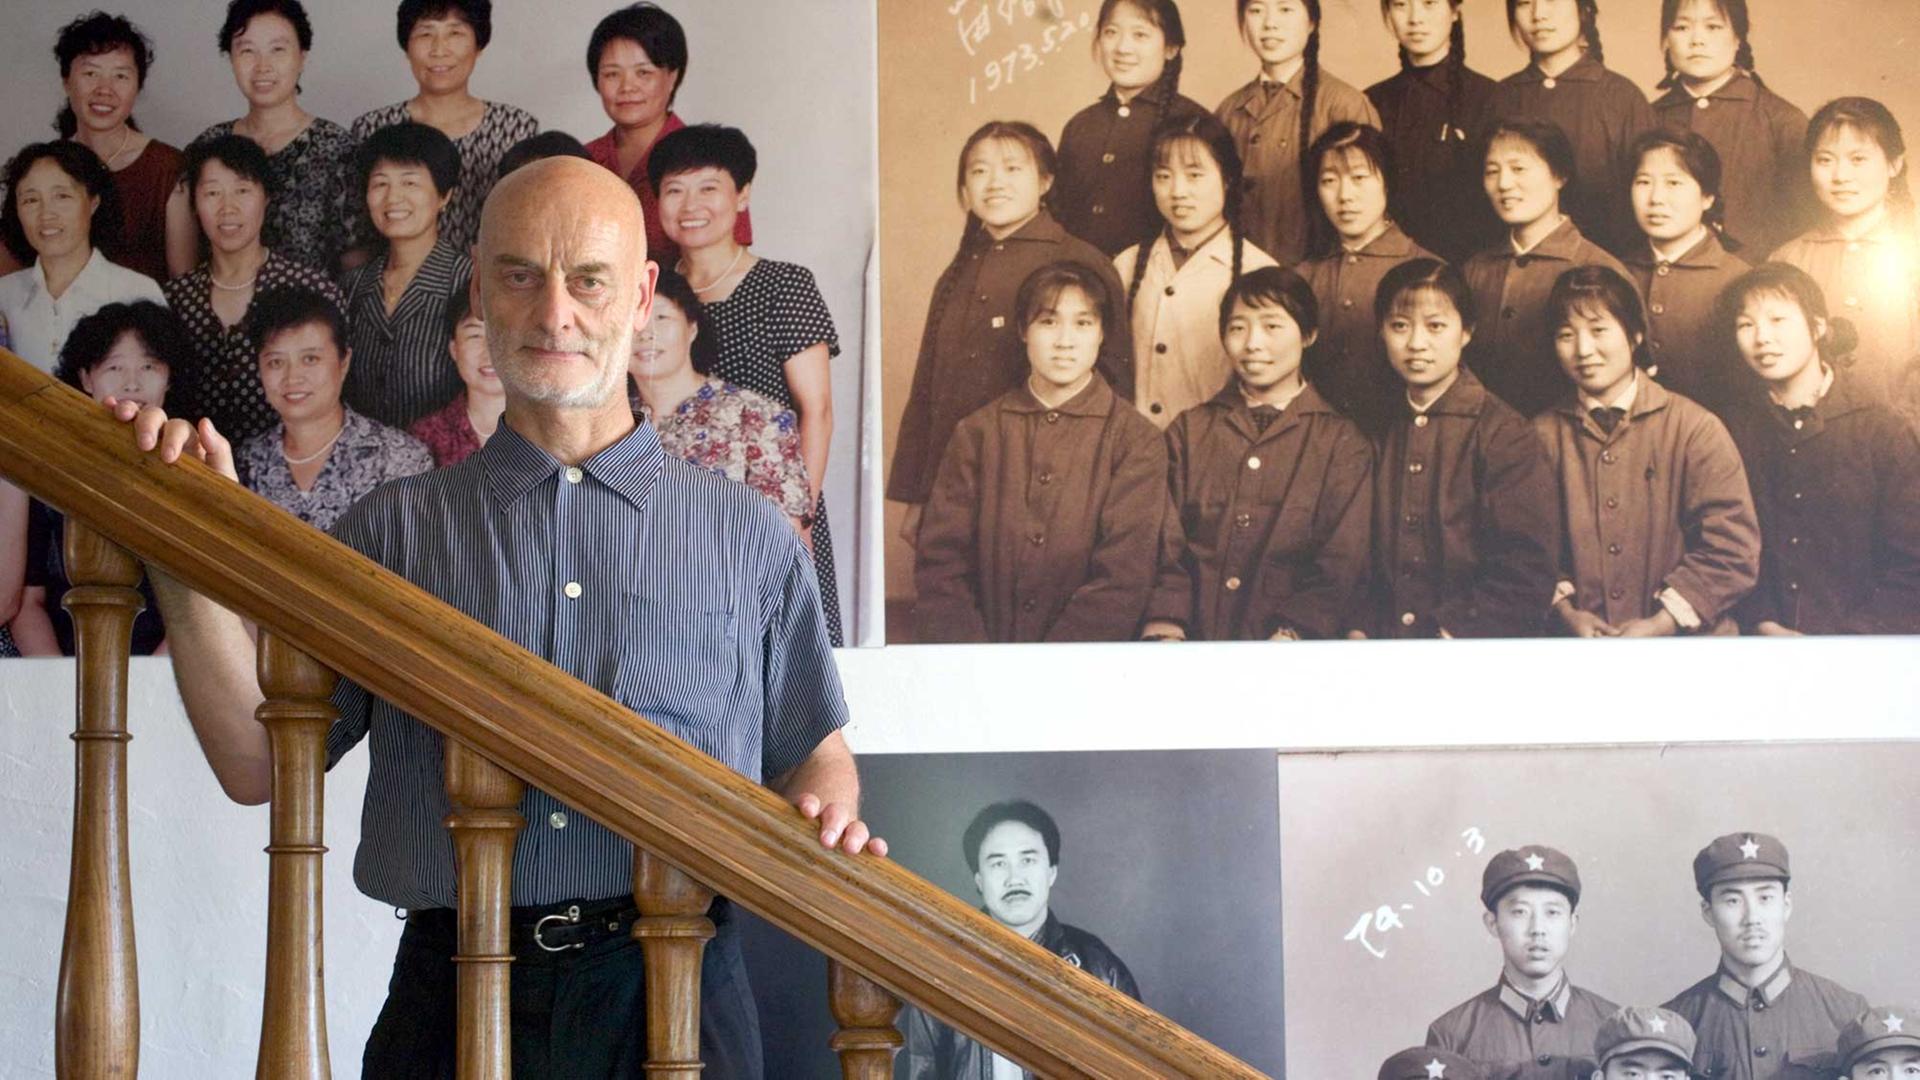 Der Schweizer Kunstsammler chinesischer Kunst Uli Sigg in seinem Haus in der Schweiz. Im Hintergrund sieht man das Kunstwerk "They reloraes for the Future" von Hai Bo.